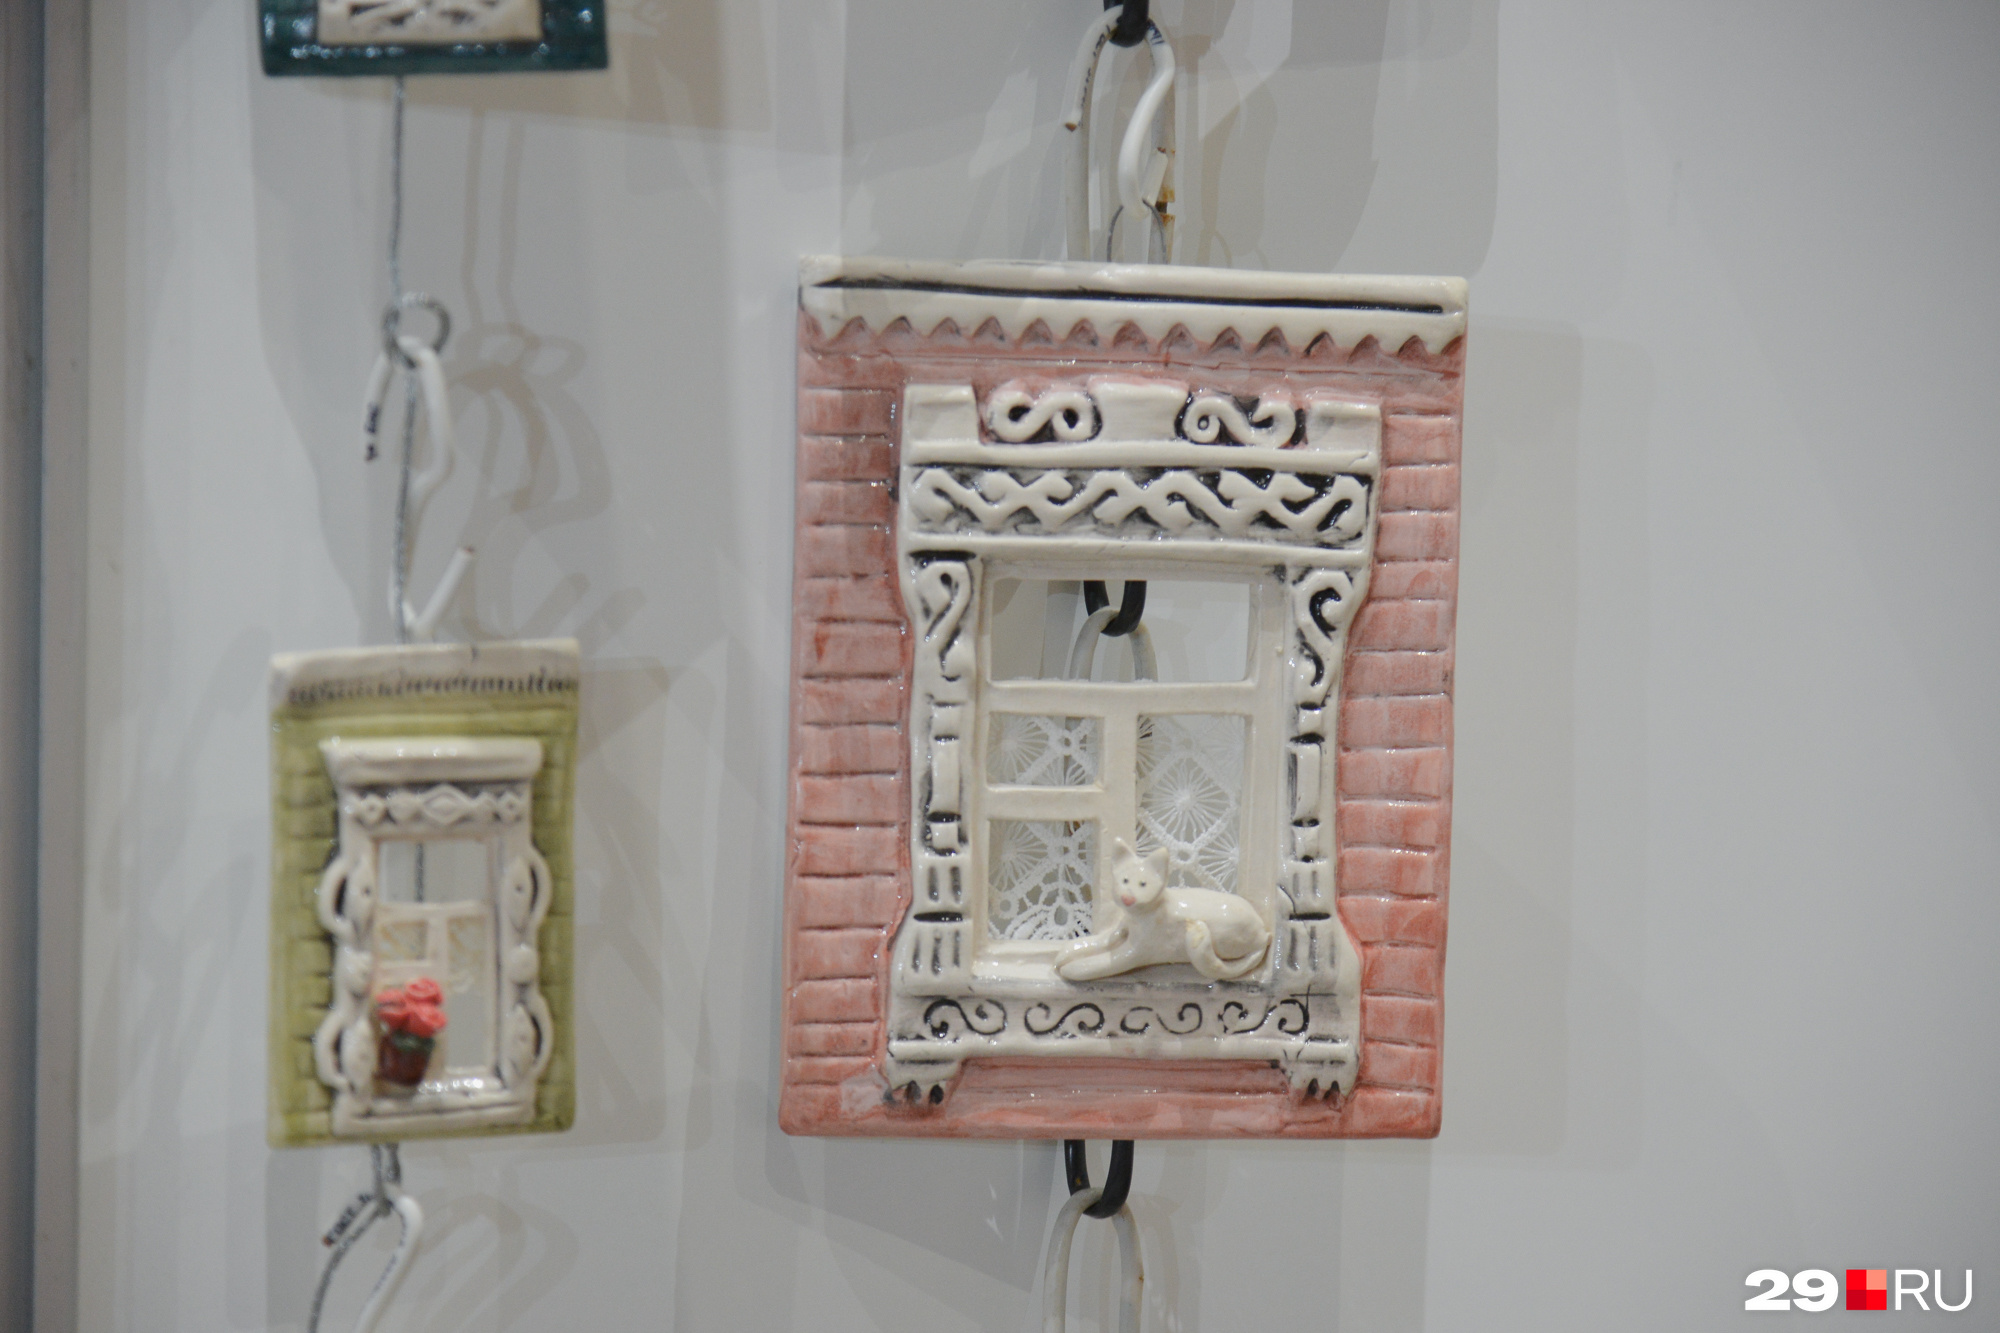 Уютные окошки из керамики от вологодских мастеров. Увидели в «Норд Экспо», цена — от 600 рублей